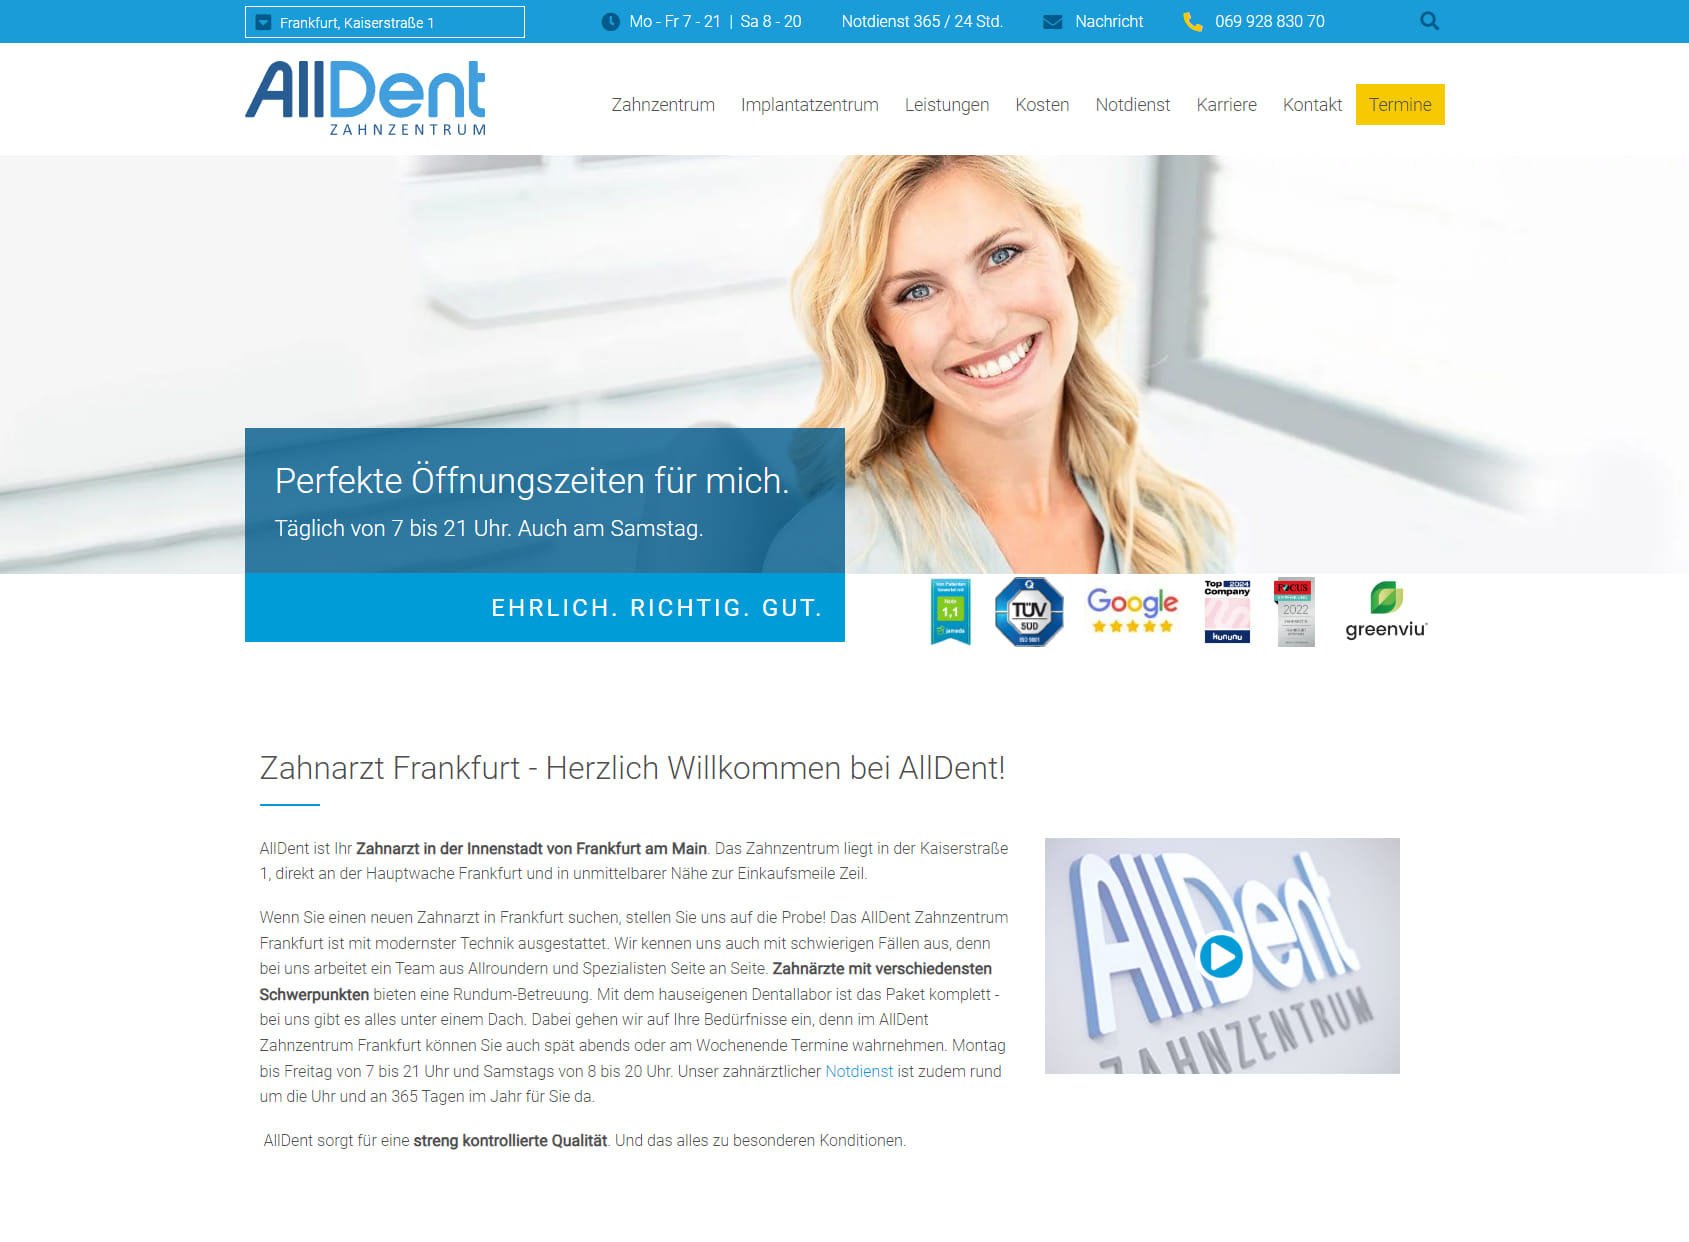 Alldent Zahnzentrum Frankfurt